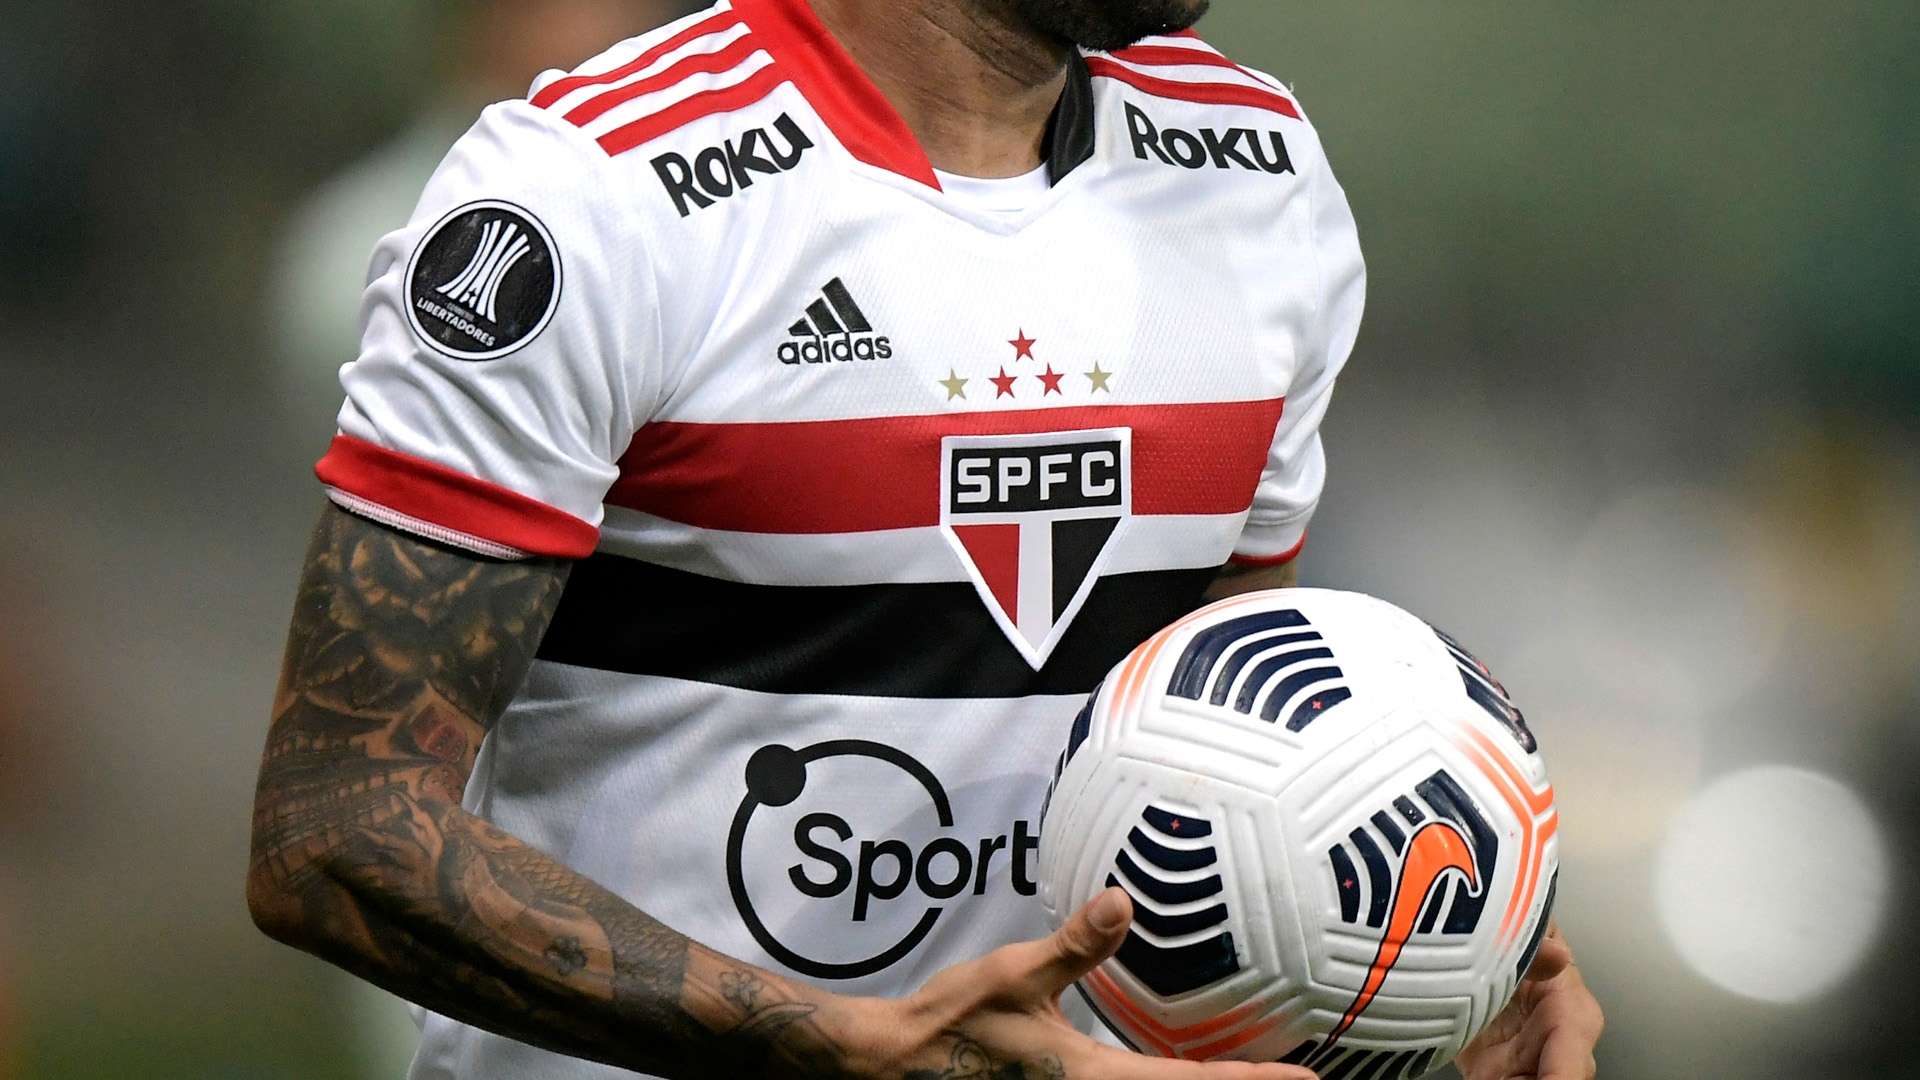 Camisa São Paulo 2021, detalhe patrocinador Sportsbet.io e Roku